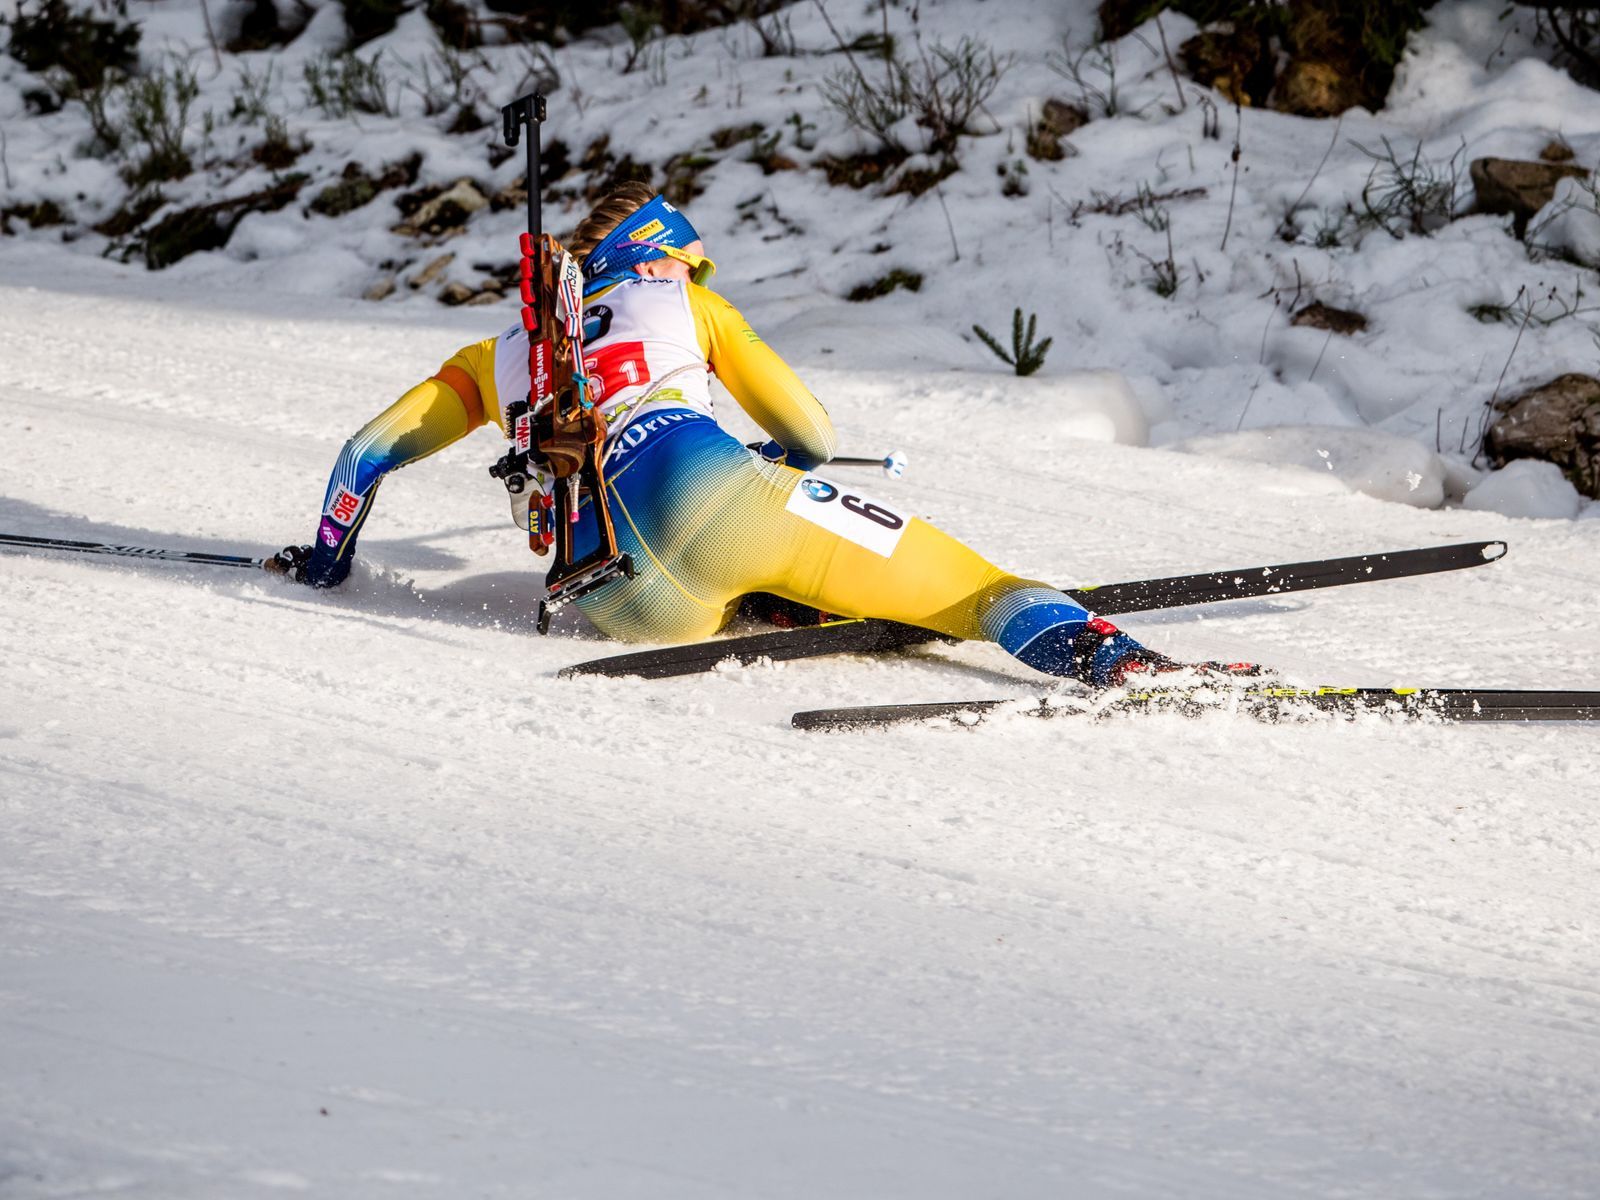 Švédka Emma Nilssonová padá ve smíšené štafetě na Světovém poháru biatlonistů v Pokljuce.